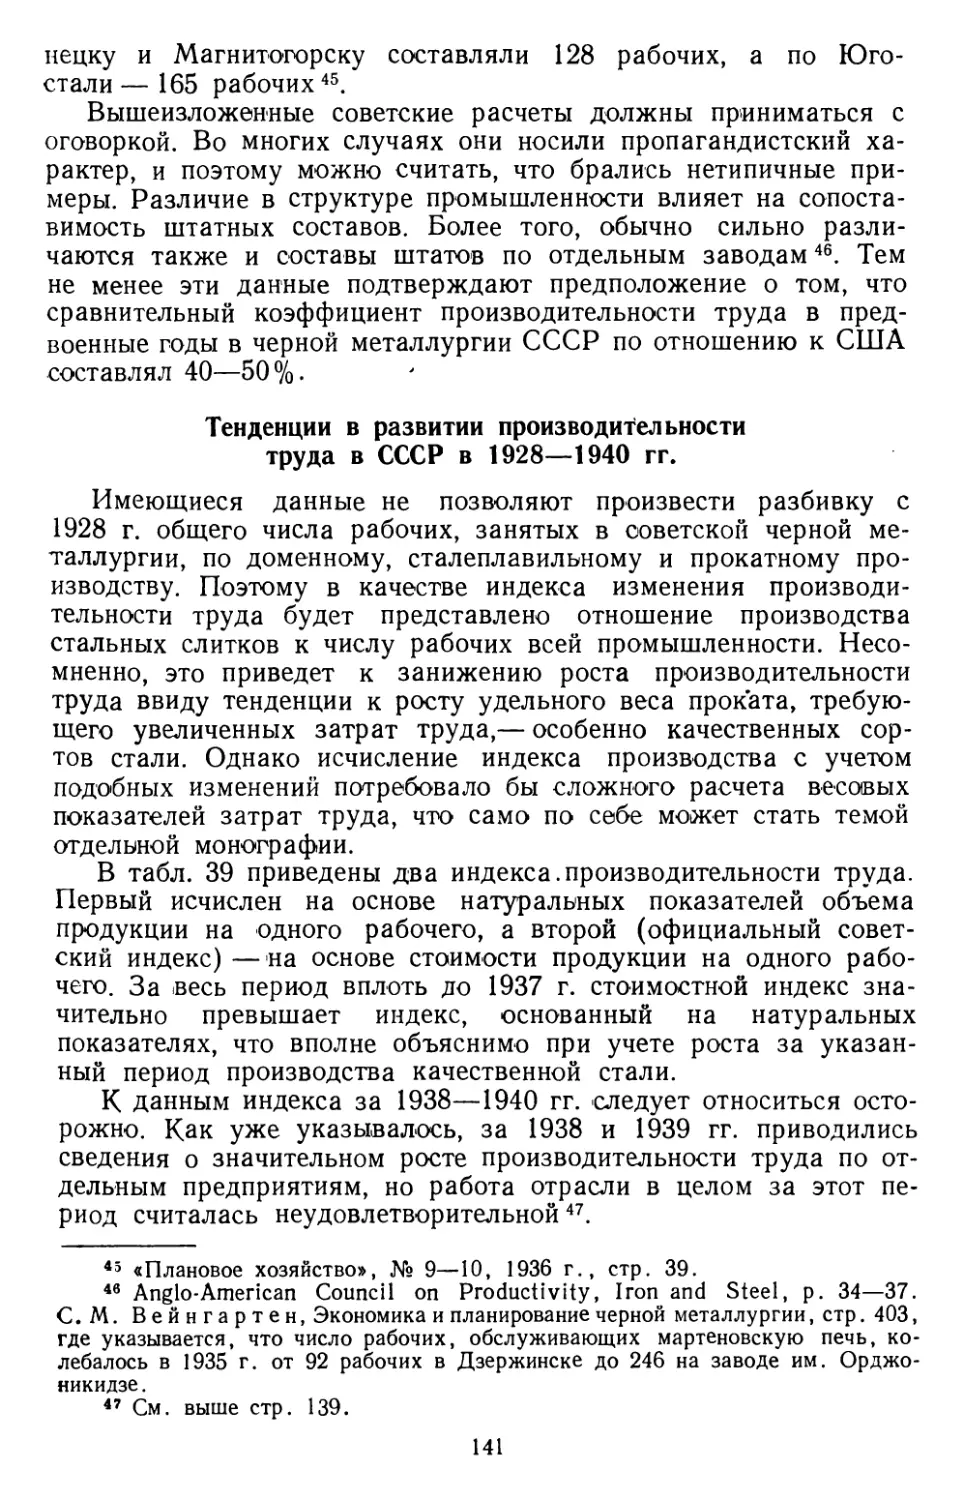 Тенденция в развитии производительности труда в СССР в 1928— 1940 гг